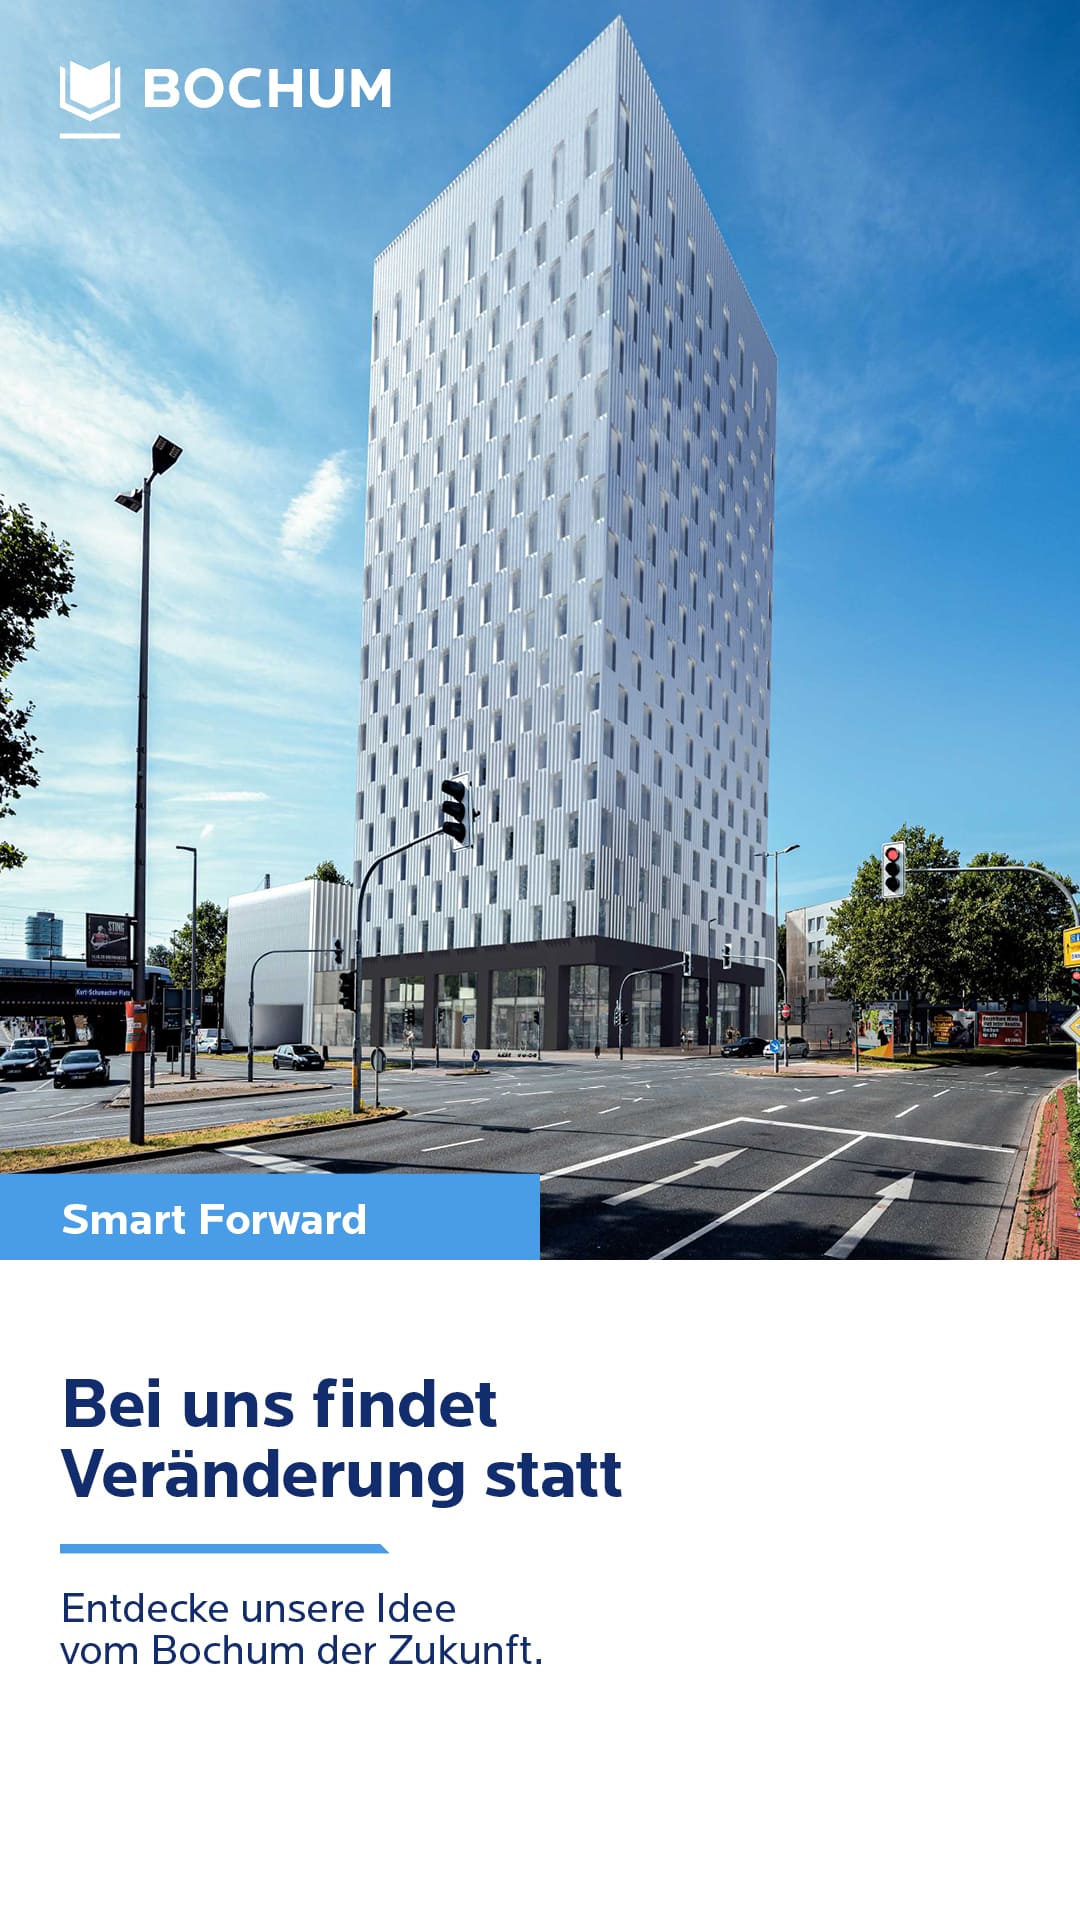 Modernes Hochhaus in städtischer Umgebung, Text "Bei uns findet Veränderung statt", Bochum